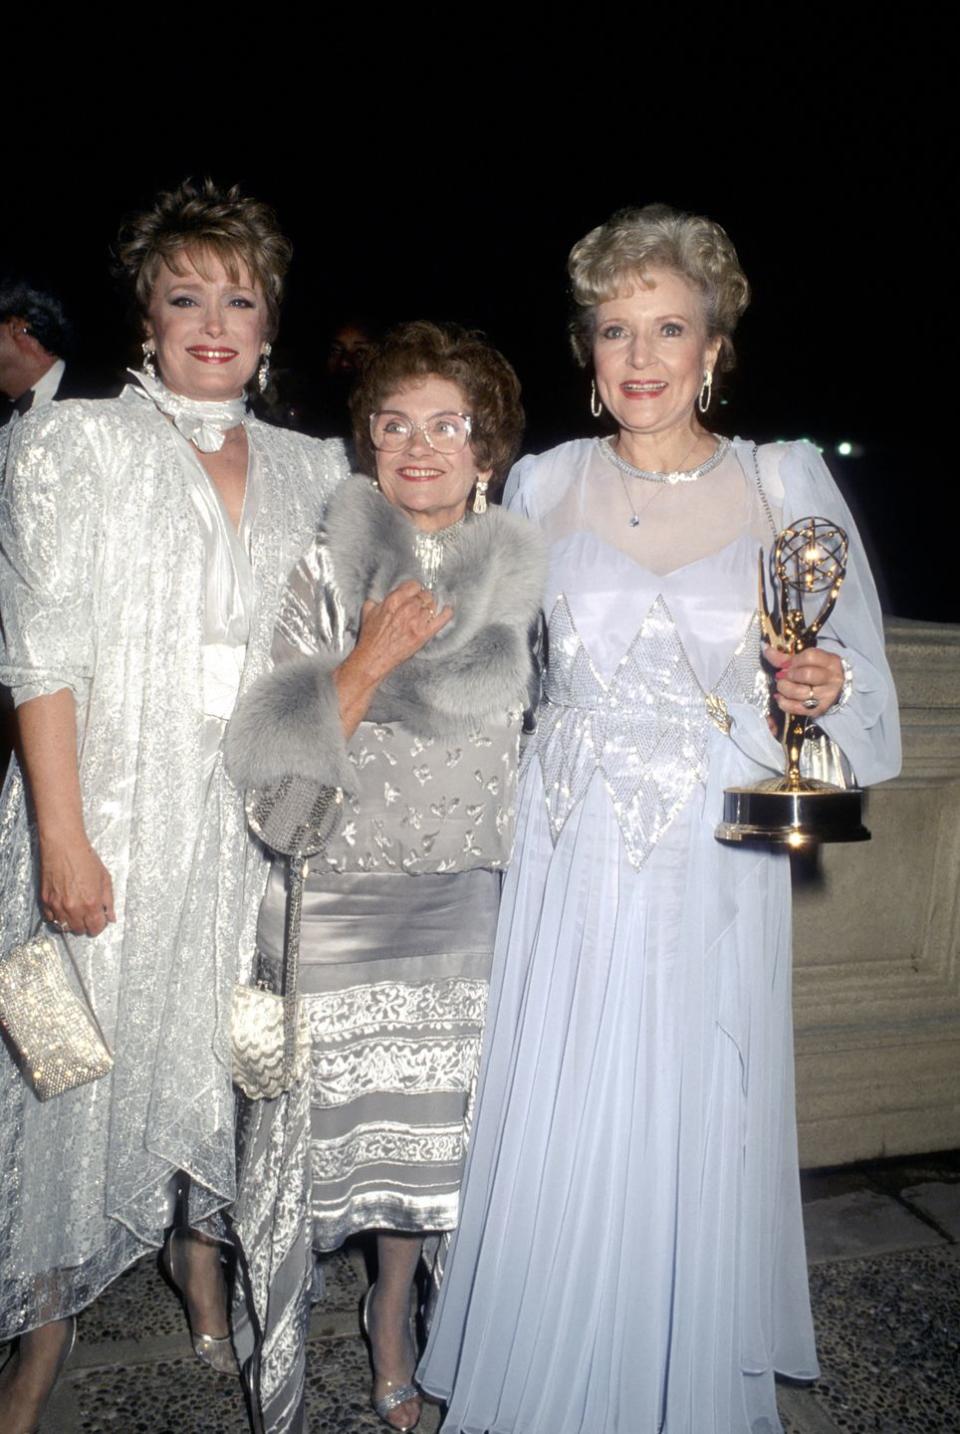 1986: Winning an Emmy